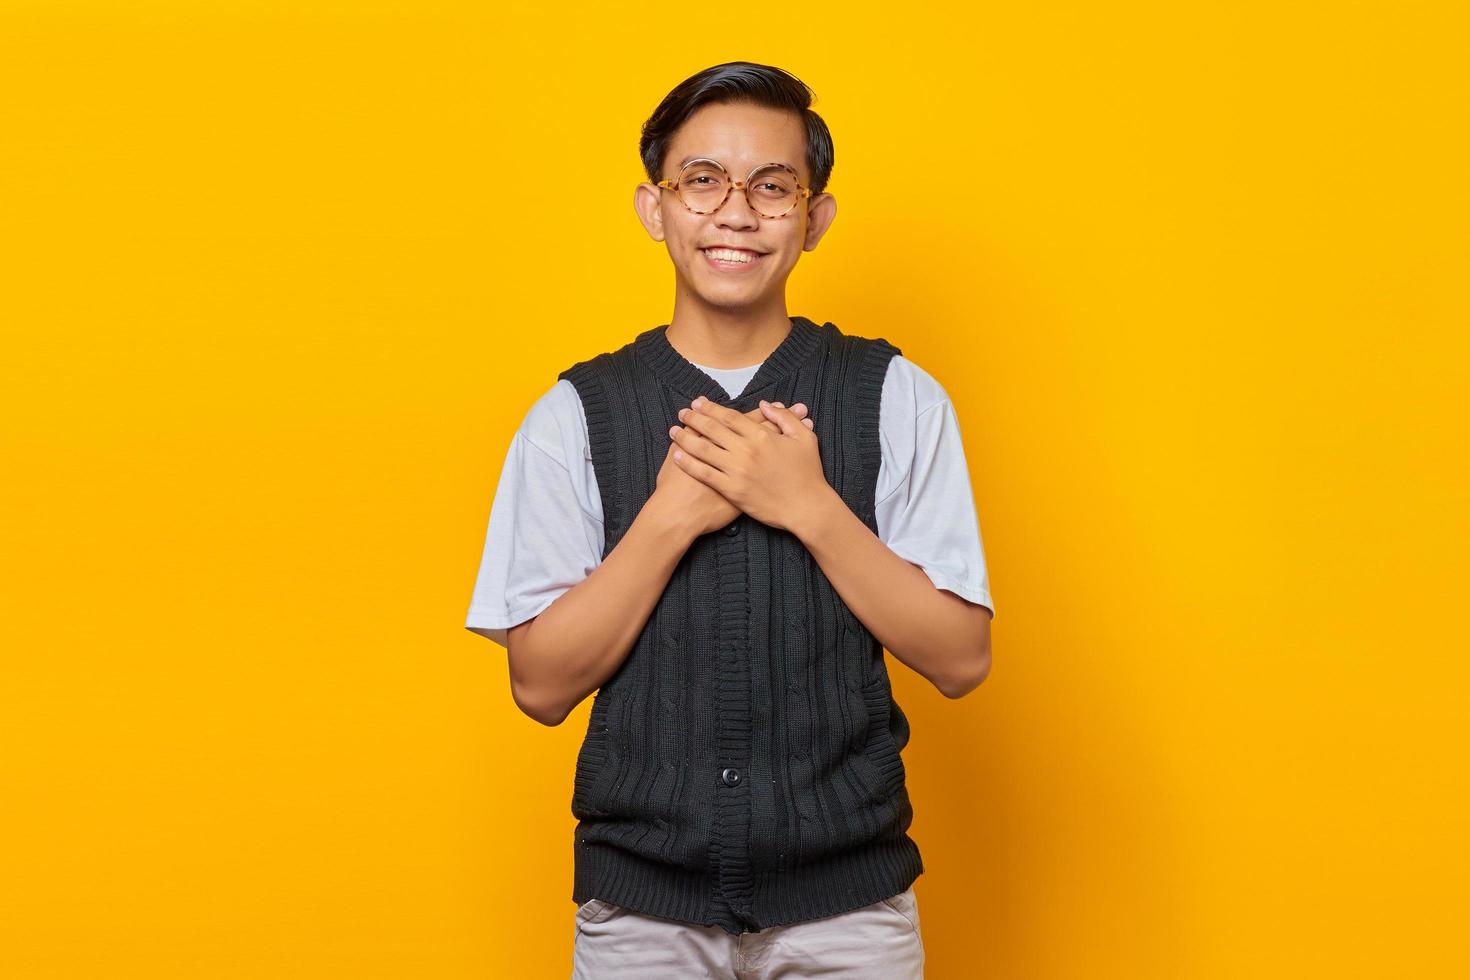 felicidade, jovem asiático, mantendo as duas palmas das mãos no peito isoladas sobre fundo amarelo foto